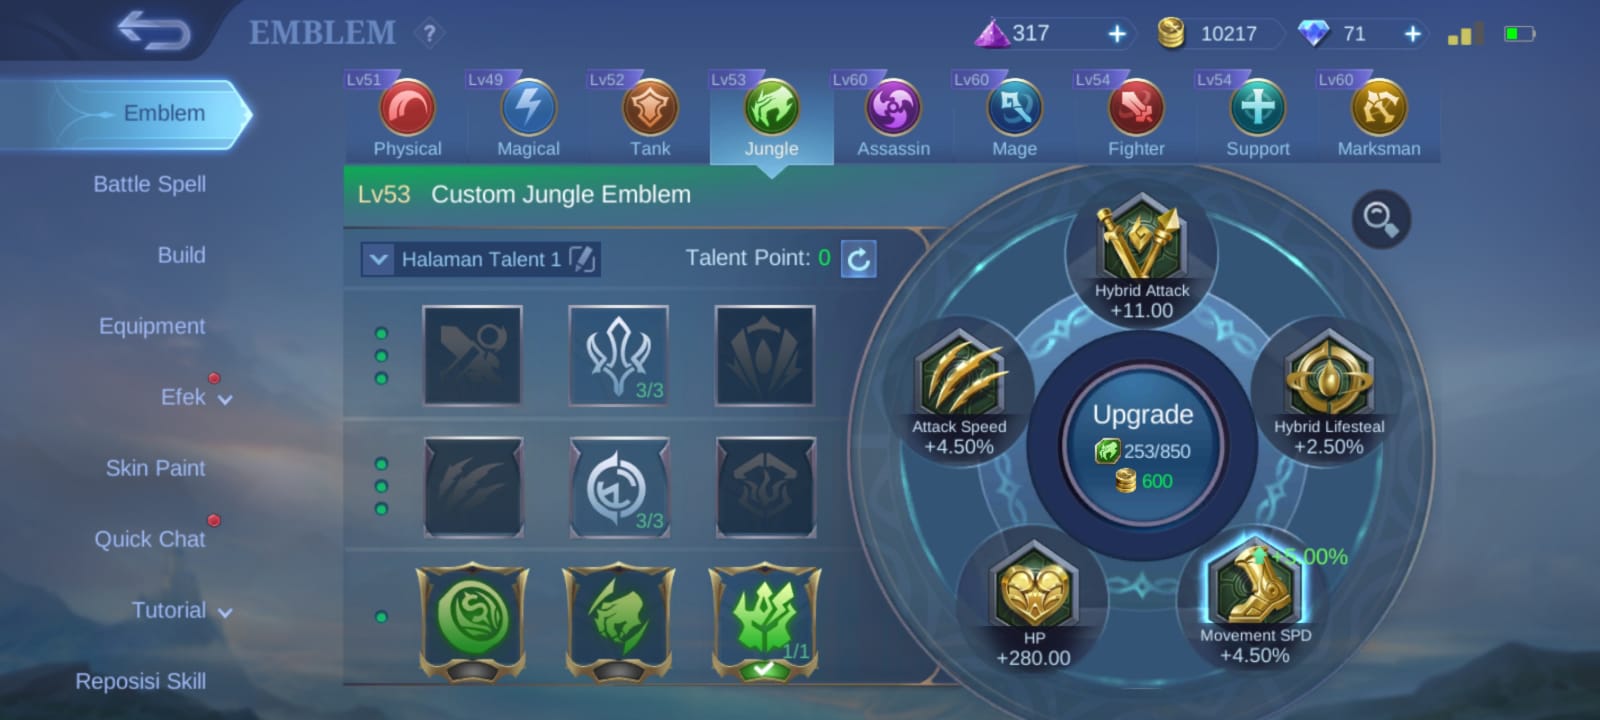 Karina Mobile Legends (ML): Build Item, Emblem, Battle Spell